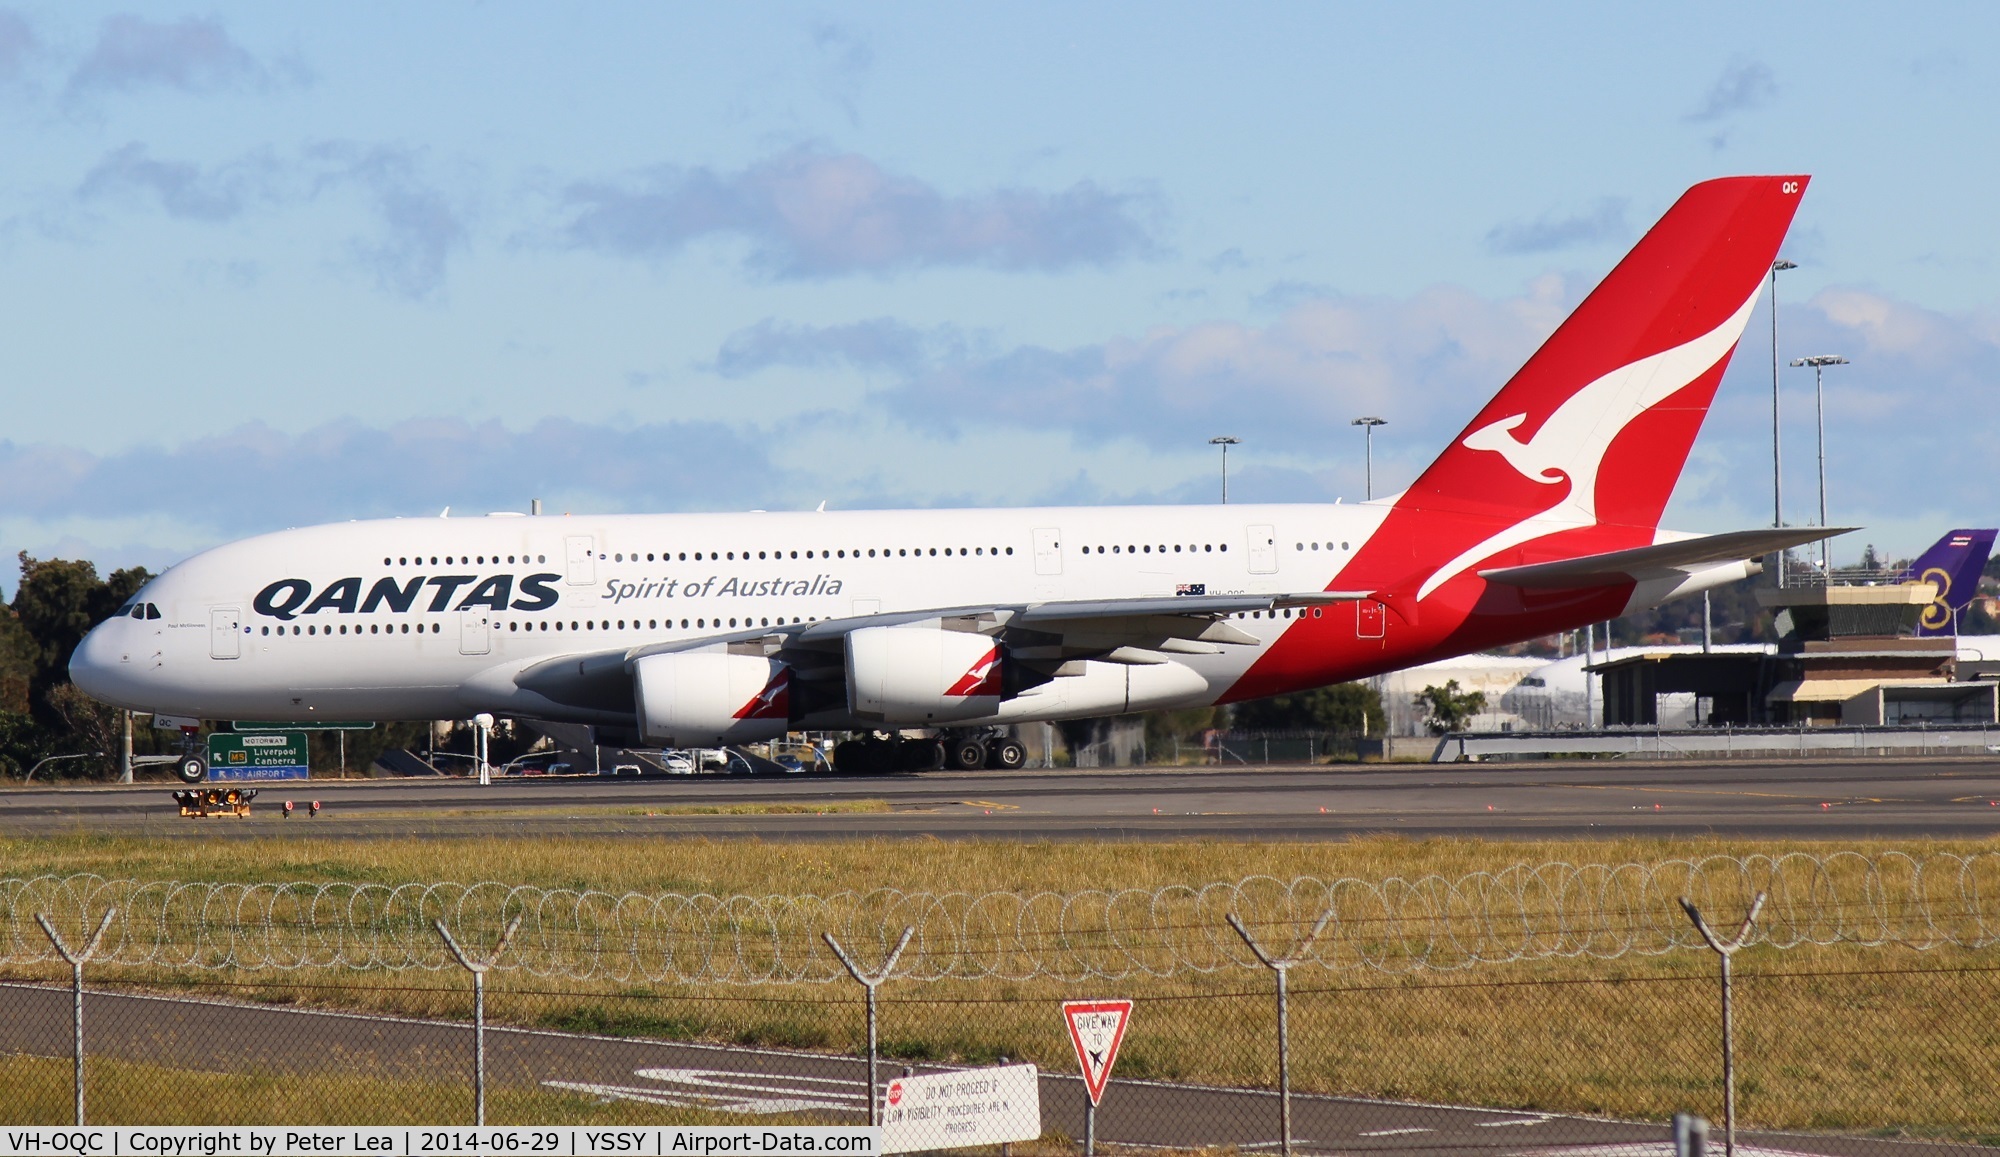 VH-OQC, 2008 Airbus A380-842 C/N 022, Qantas Airbus A380 VH-OQC at Sydney Airport